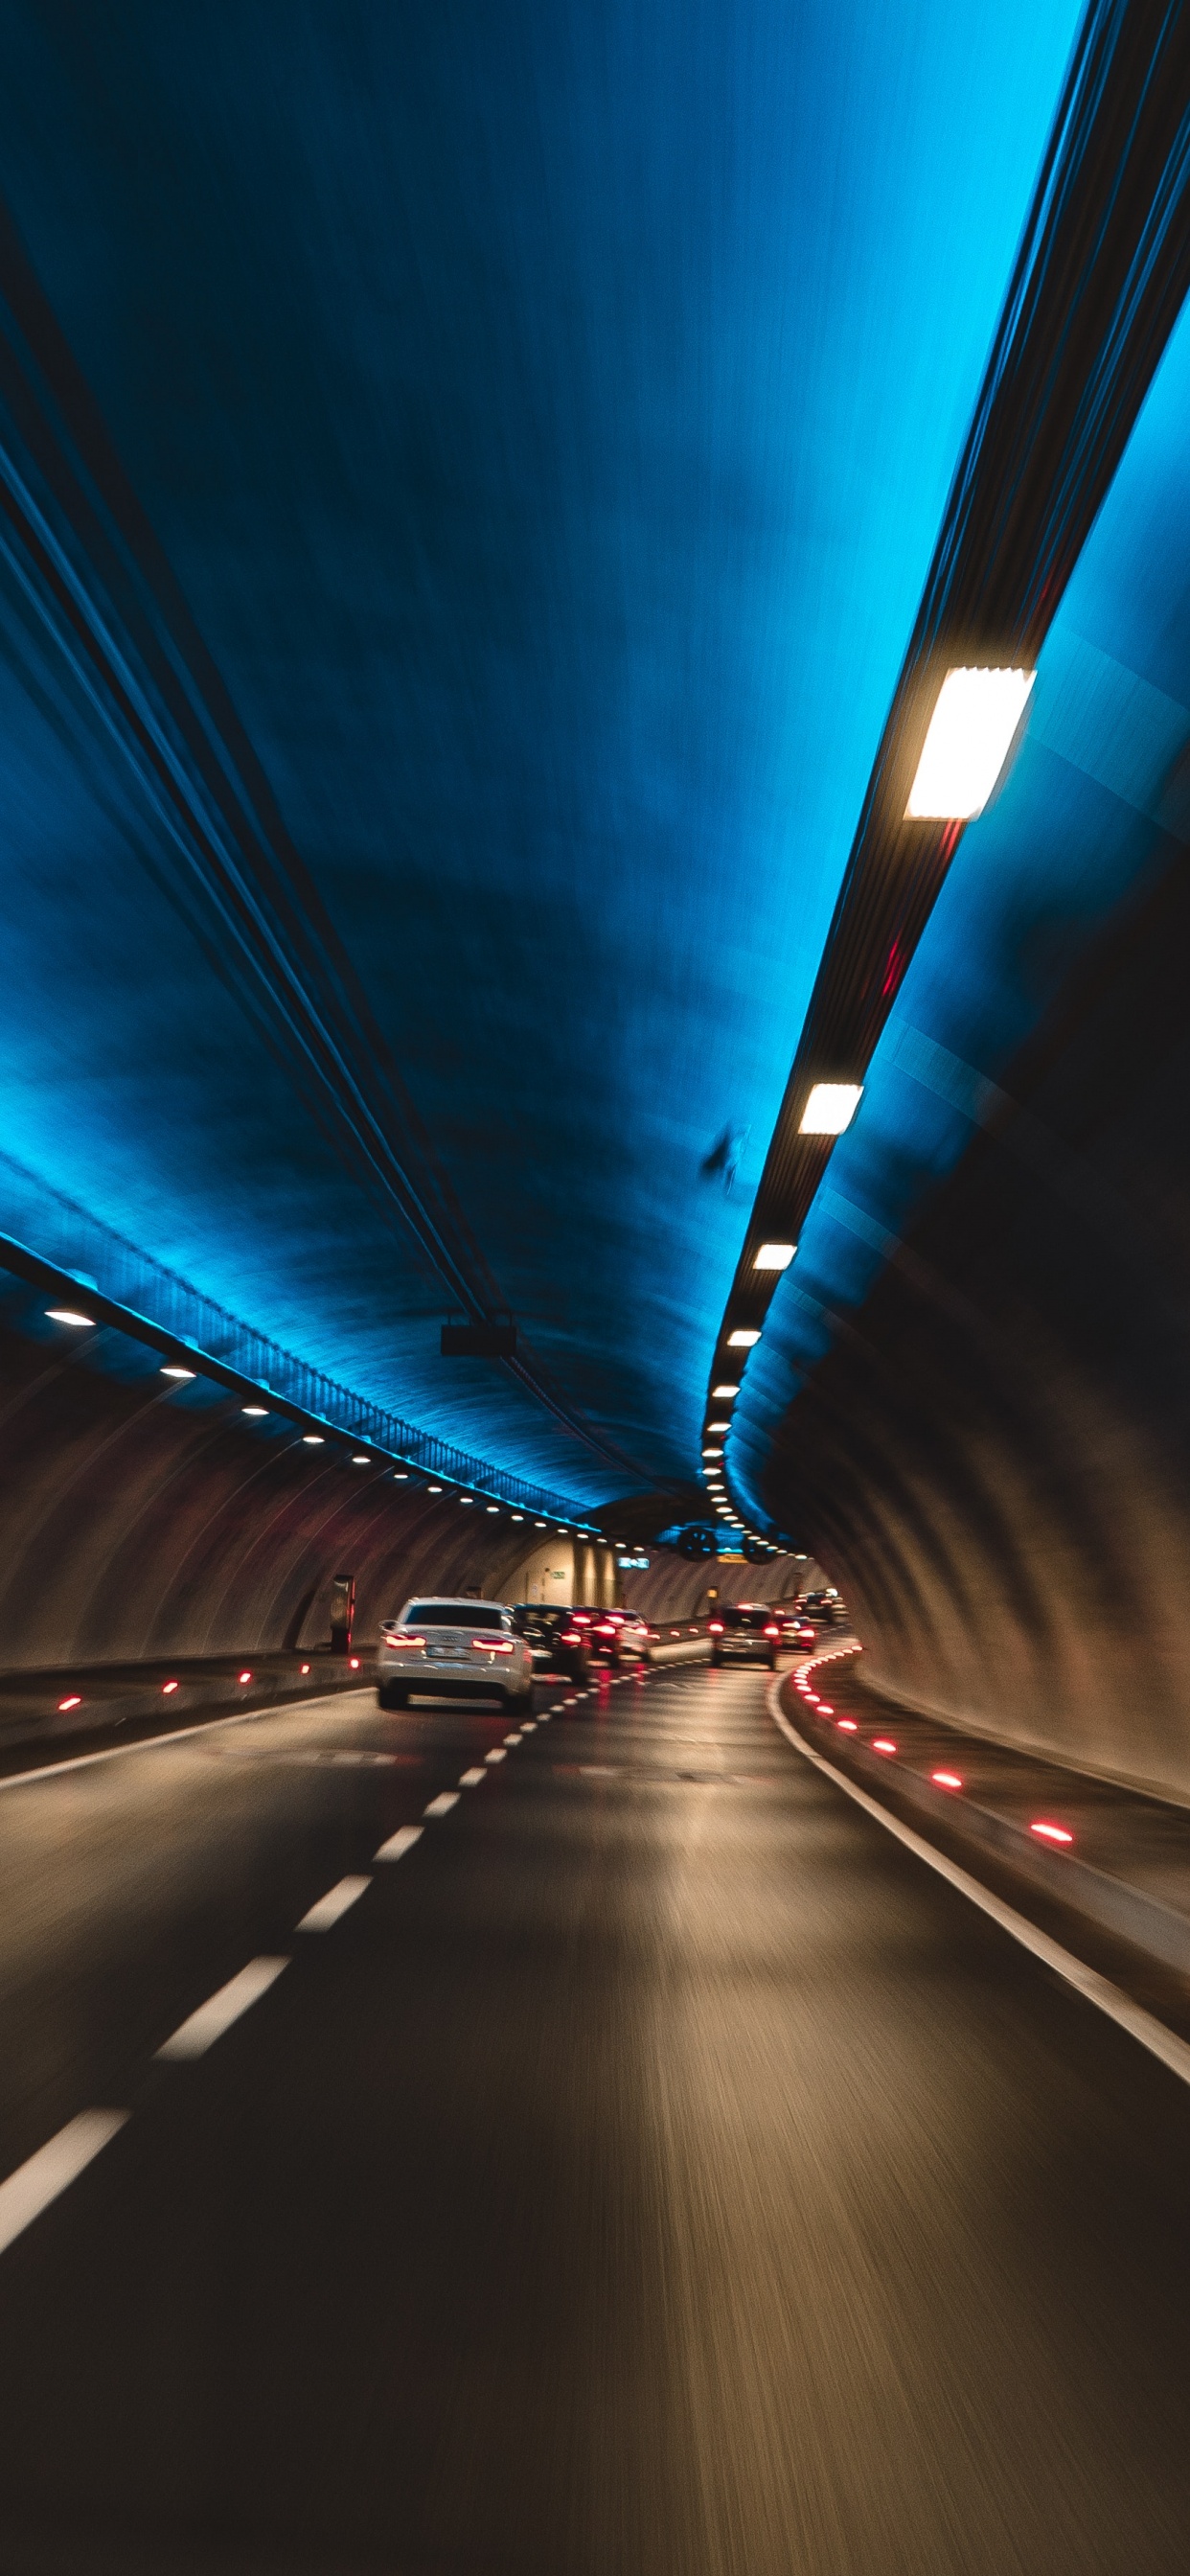 隧道, 高速公路, 车道, 光, 基础设施 壁纸 1242x2688 允许